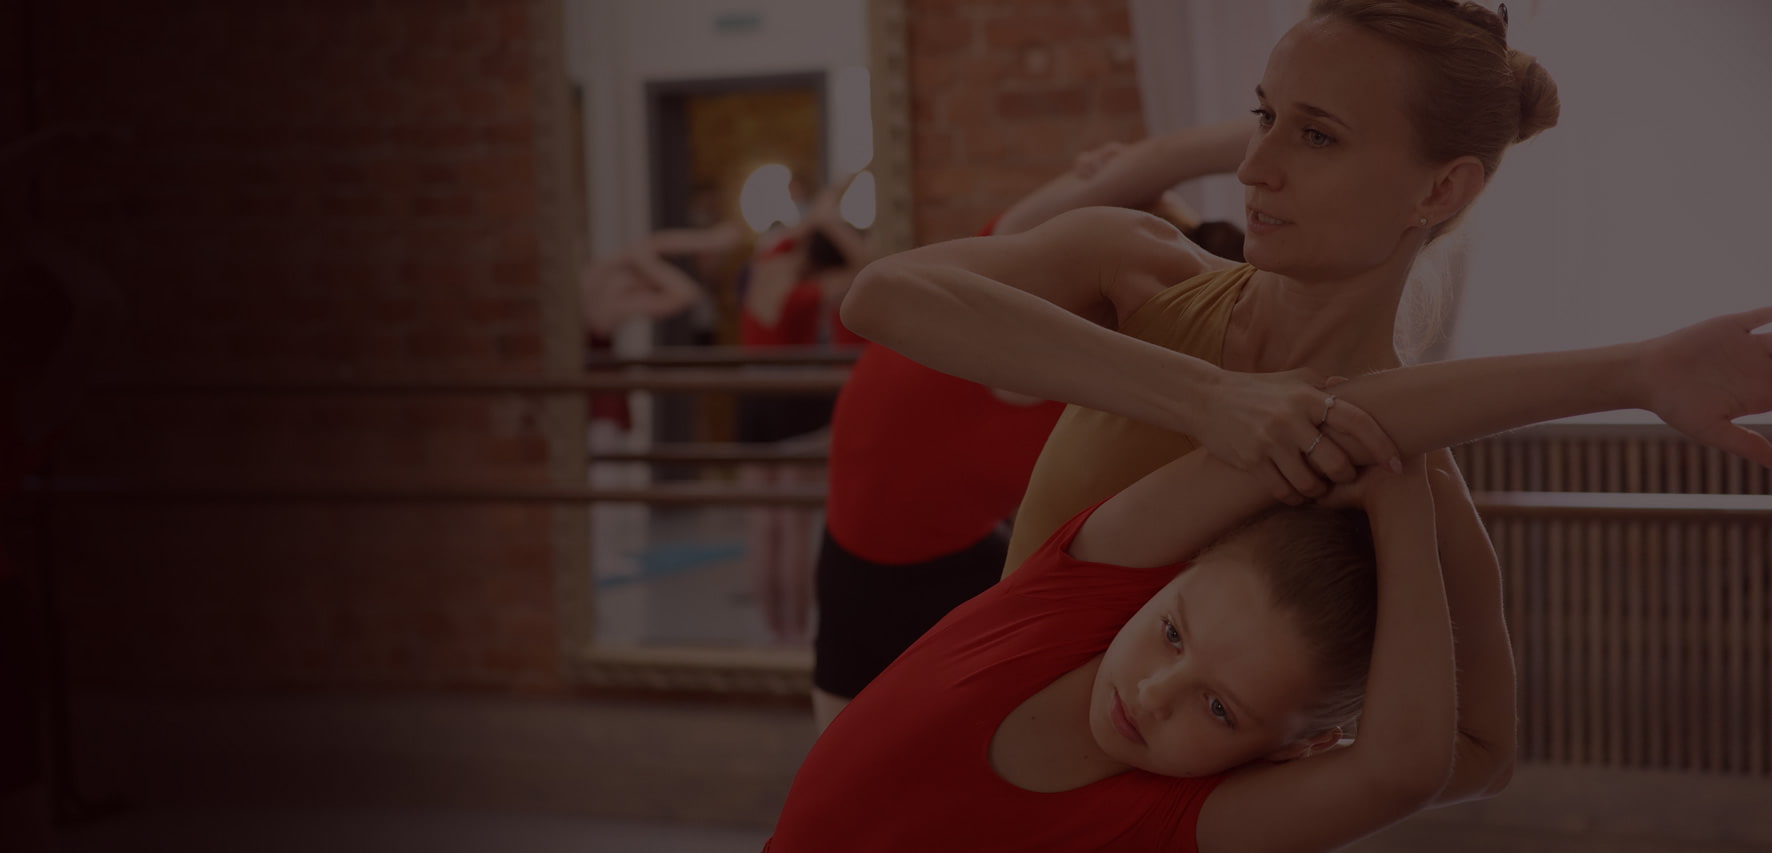 Уроки хореографии для детей в СПб от профессиональных педагогов